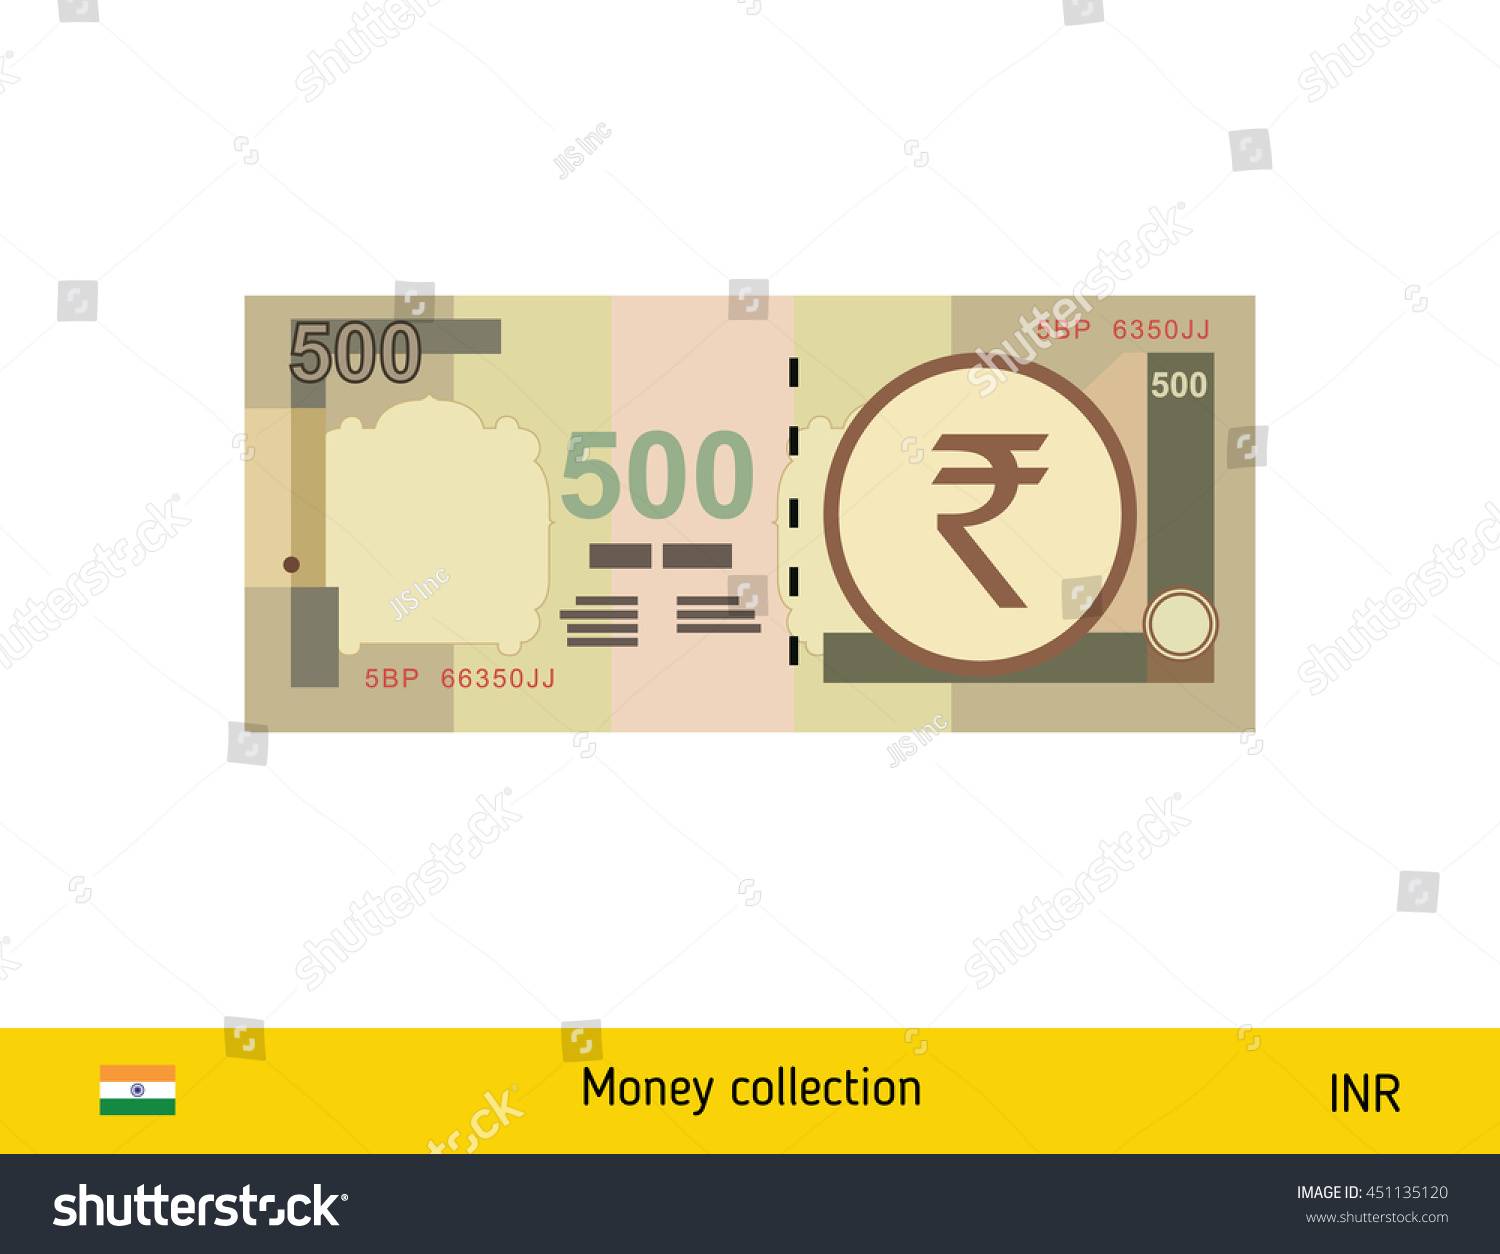 SVG of 500 rupee banknote illustration. svg